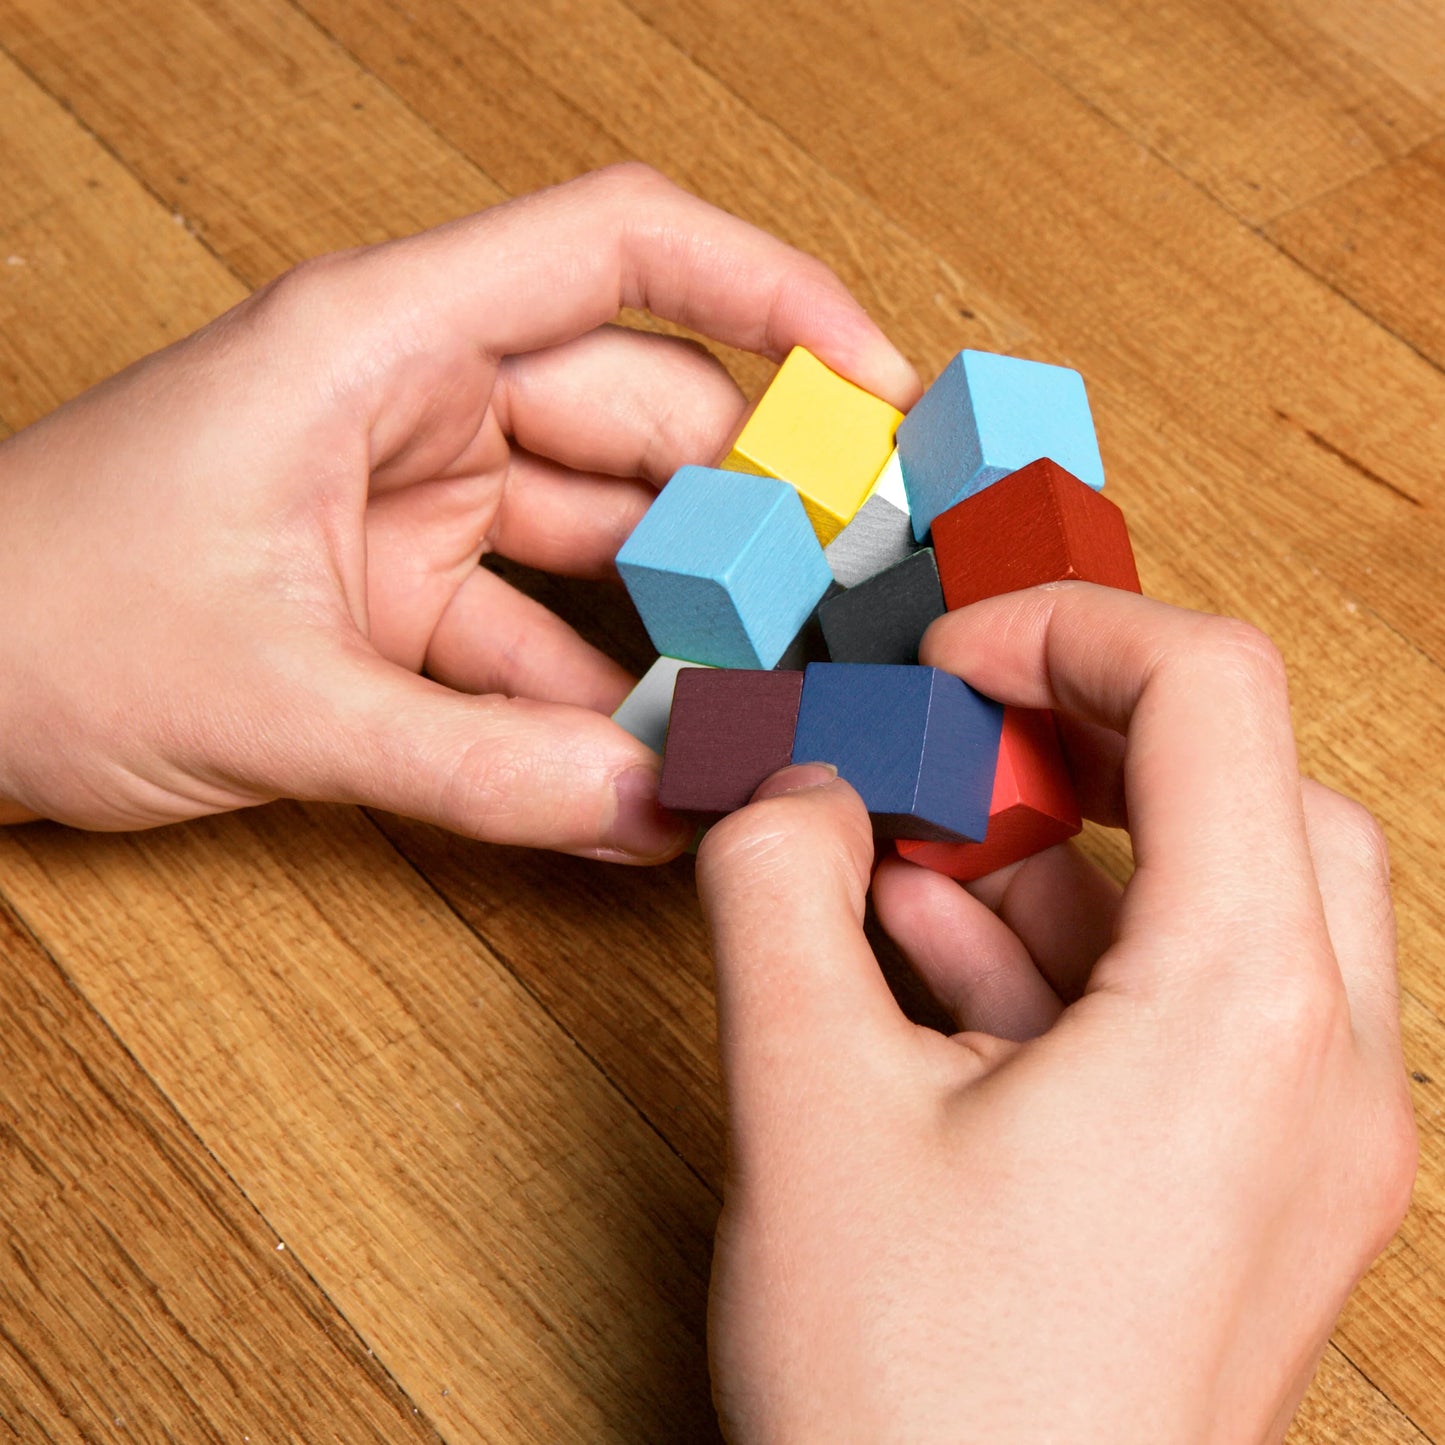 Cube 3D Wooden Puzzle